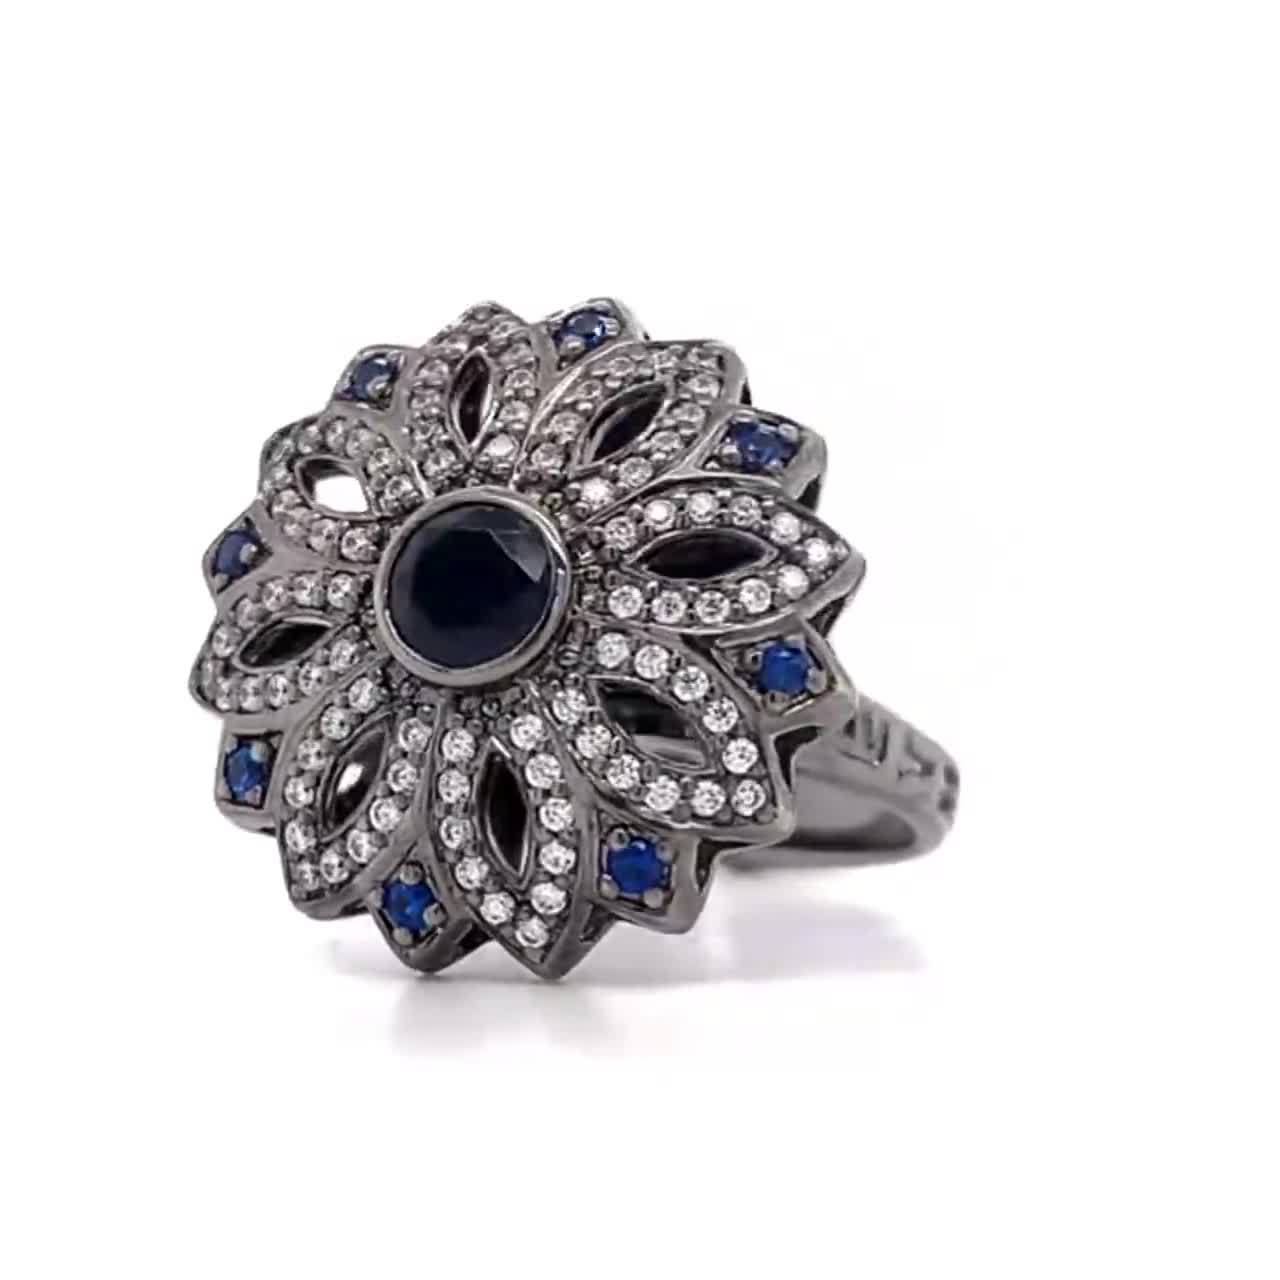 แหวนแฟชั่น-ethniq-ฝังพลอยนาโนนำเข้า-สีขาว-น้ำเงินไพลิน-ชุบ-black-rhodium